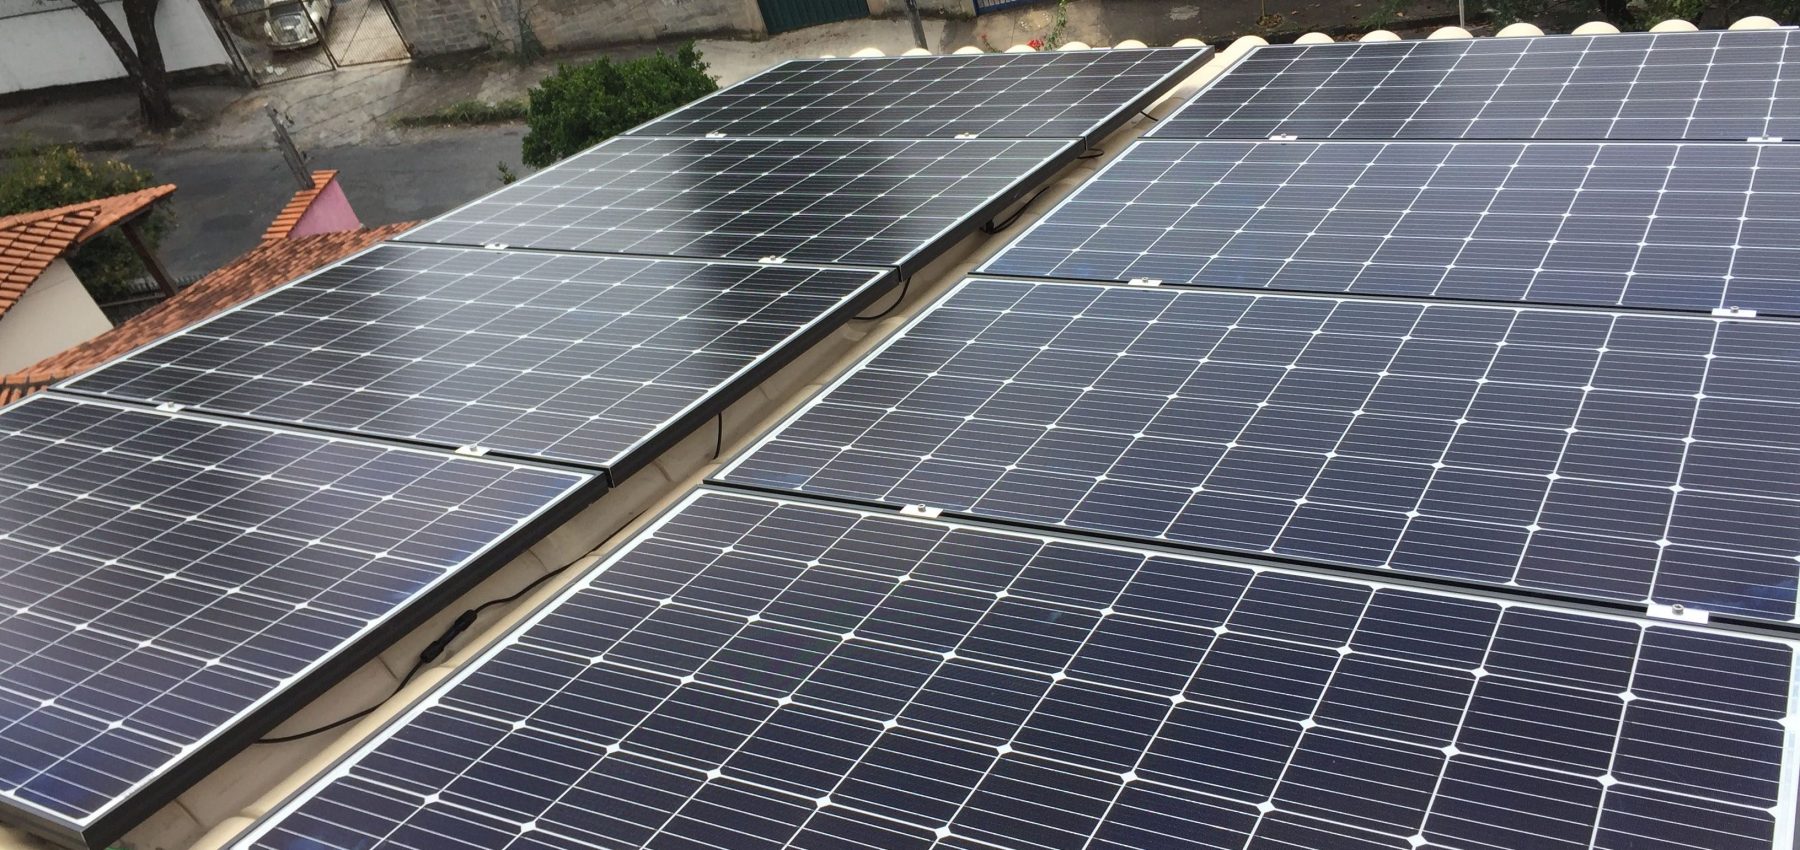 Devo investir em energia solar fotovoltaica?